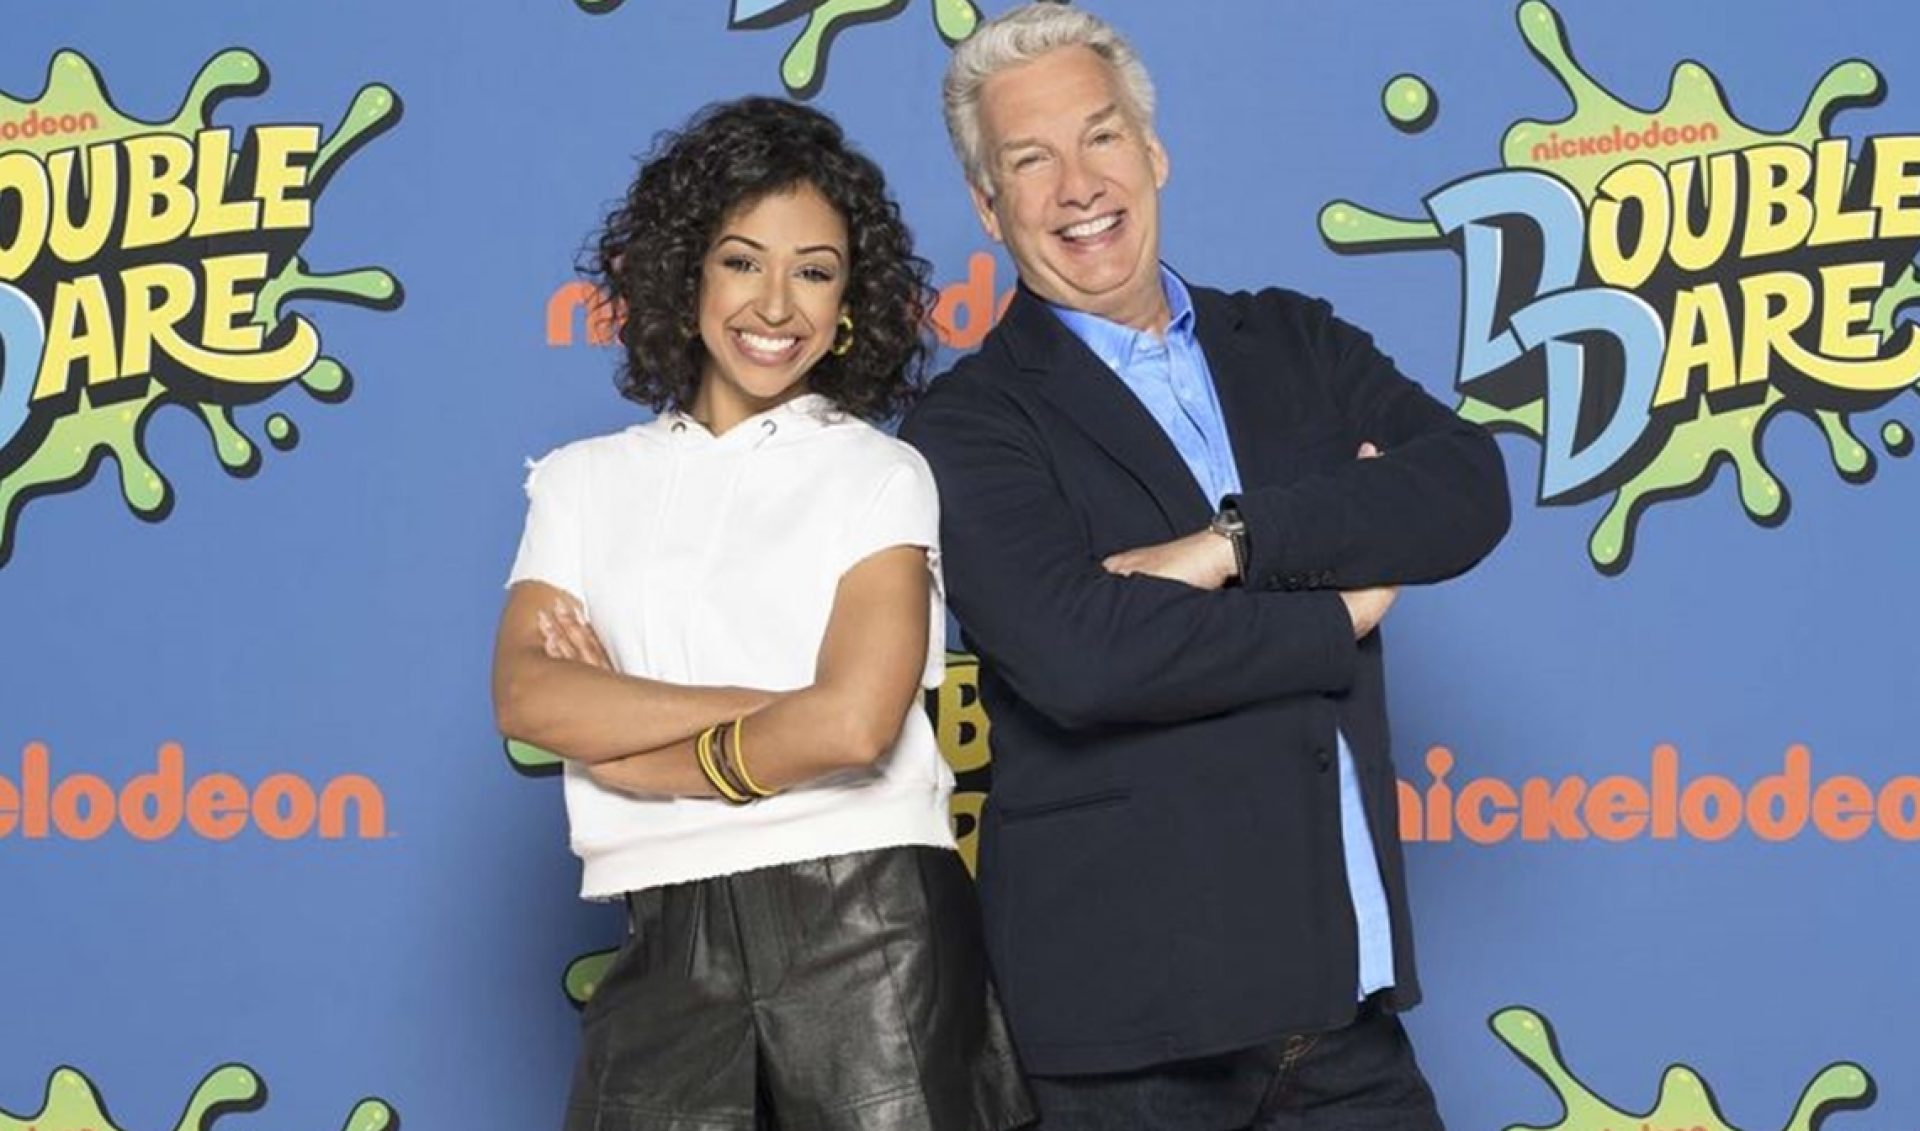 Liza Koshy To Host Reboot Of ‘Double Dare’, Nickelodeon’s Longest-Running Game Show